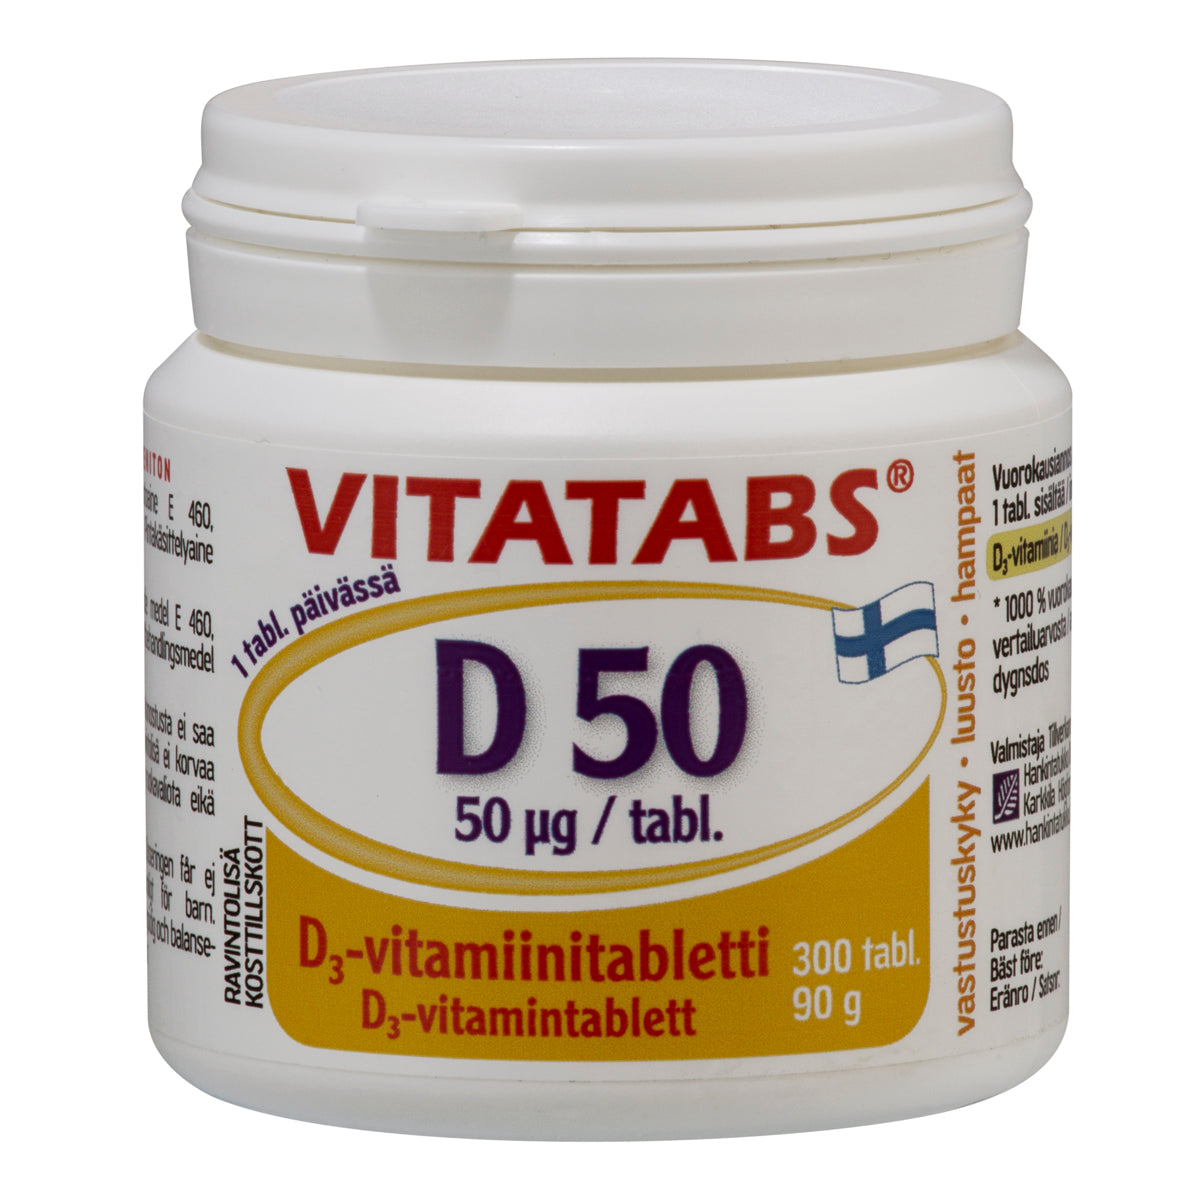 Лучшие вит д3. Витатабс витамин д3 100 из Финляндии. Финские витамин д3 Vitatabs. Vitatabs d-caps 50 мкг витамин д. Финские витамины Vitamar d3.